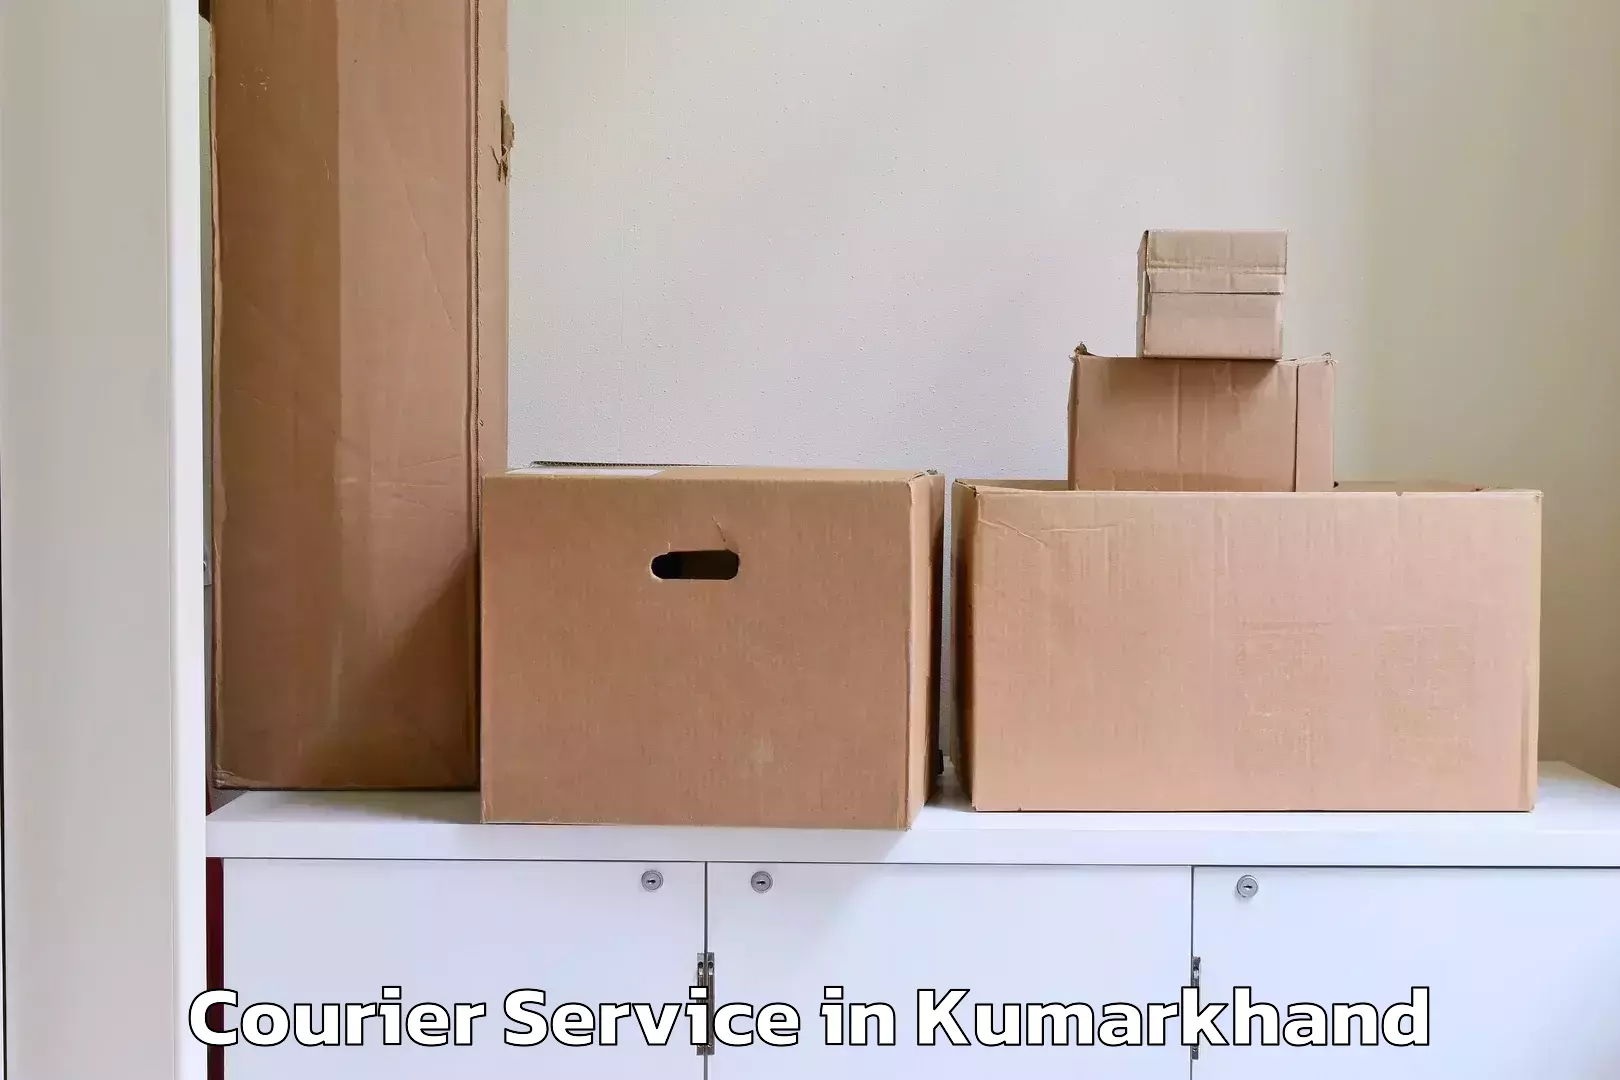 Easy return solutions in Kumarkhand